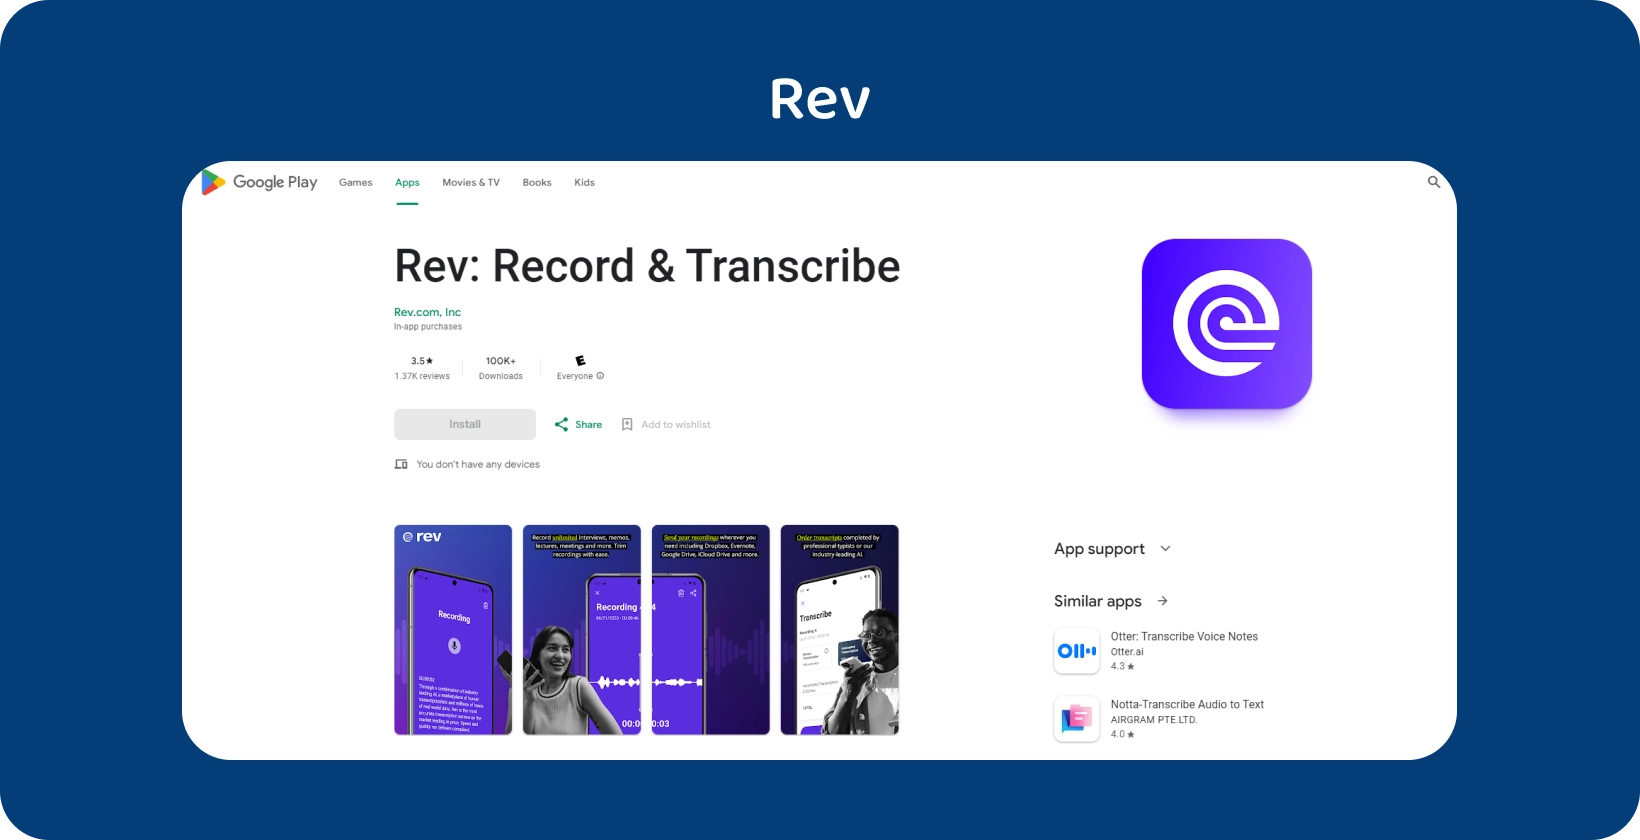 Rev ऐप का Google Play Store प्रदर्शन, Android उपकरणों पर रिकॉर्डिंग और ट्रांसक्रिप्शन के लिए सुविधाओं को उजागर करना।